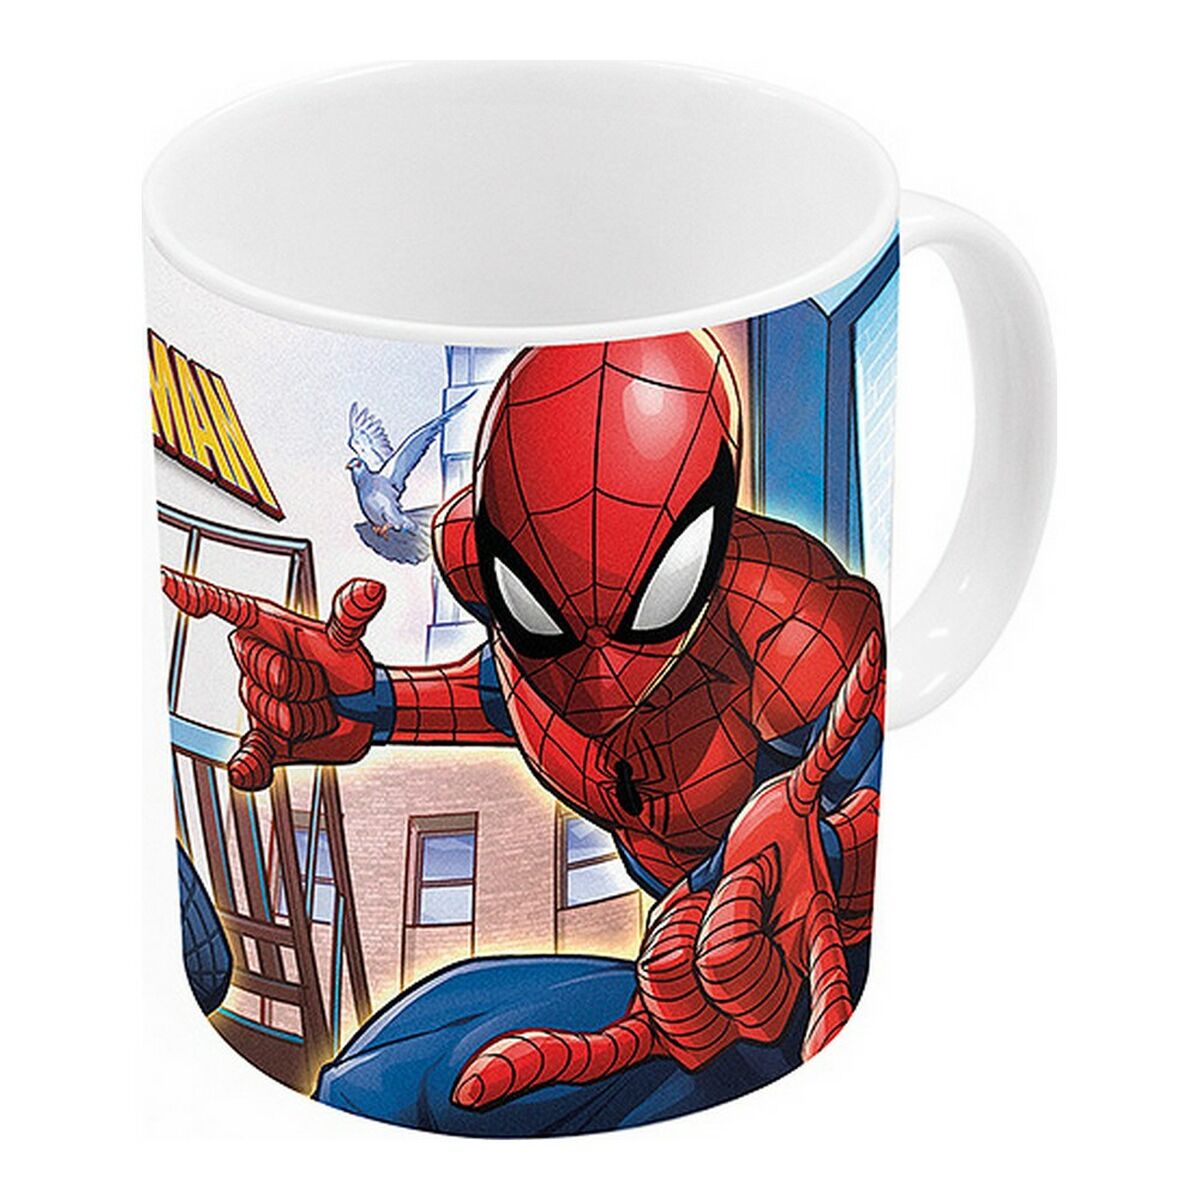 Cană tip Halbă Spiderman Great Power Ceramică Roșu Albastru (11.7 x 10 x 8.7 cm) (350 ml)